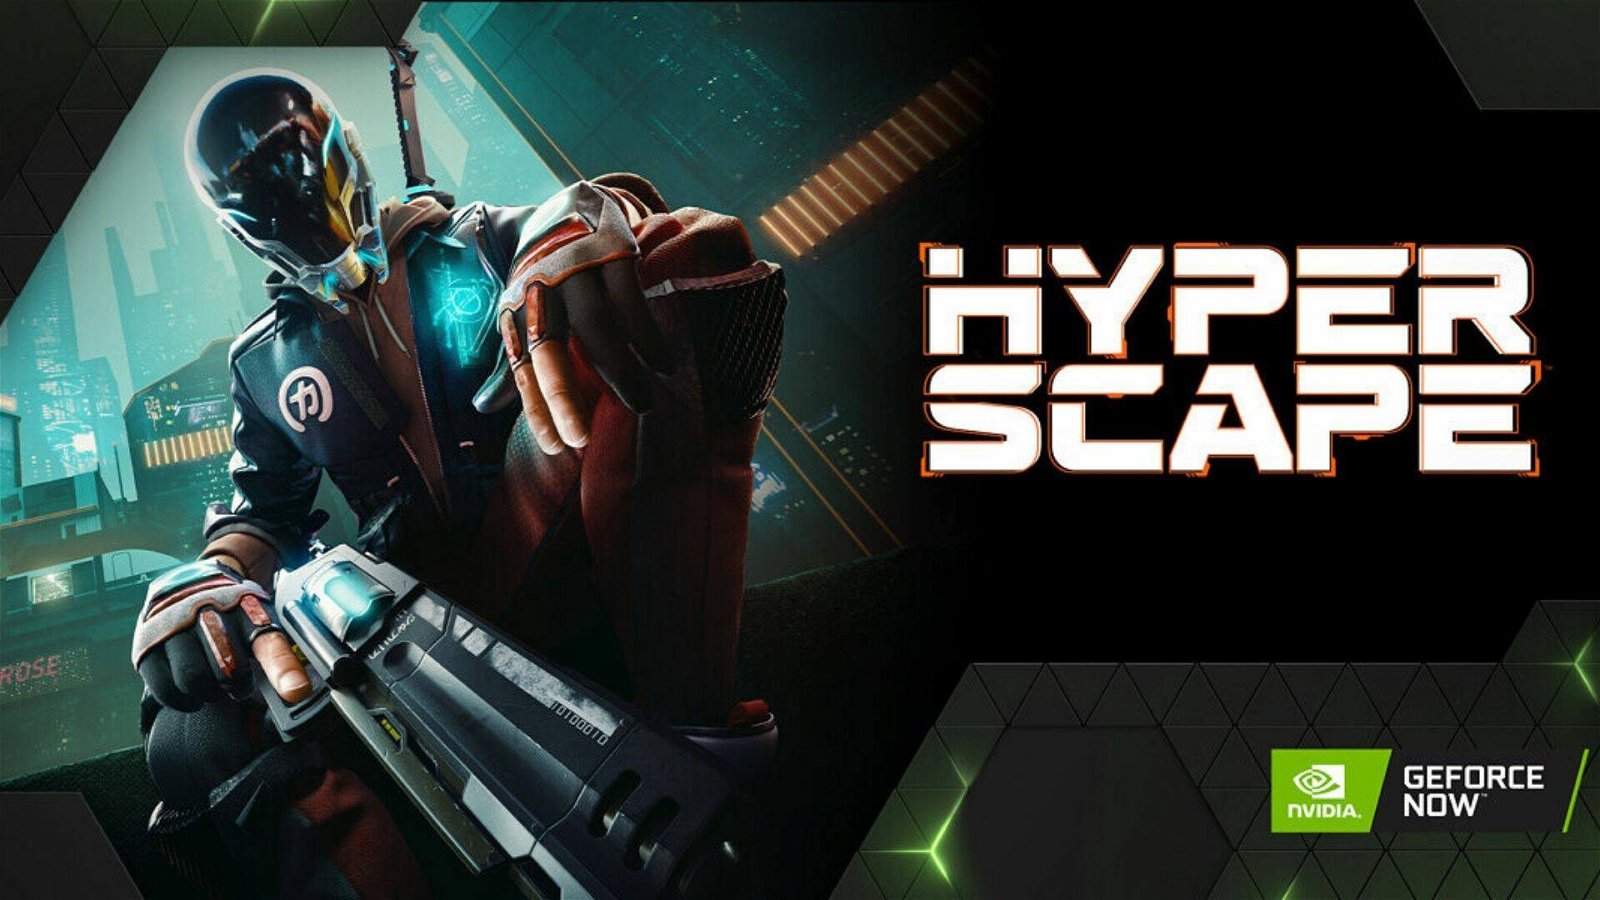 Immagine di 6 mesi di GeForce Now in offerta e contenuti esclusivi per Hyper Scape